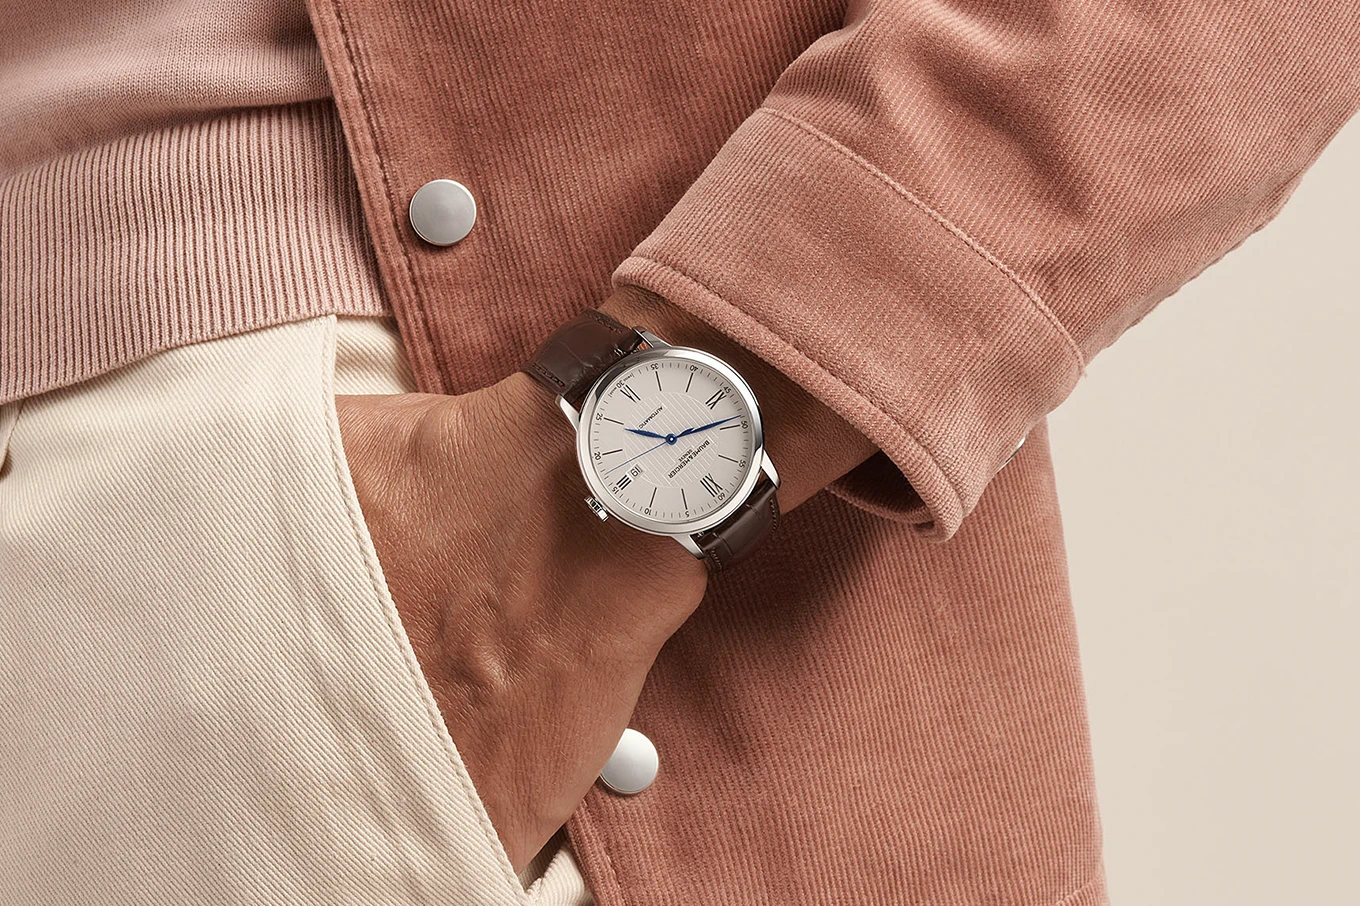  Shop Baume & Mercier watches - Image